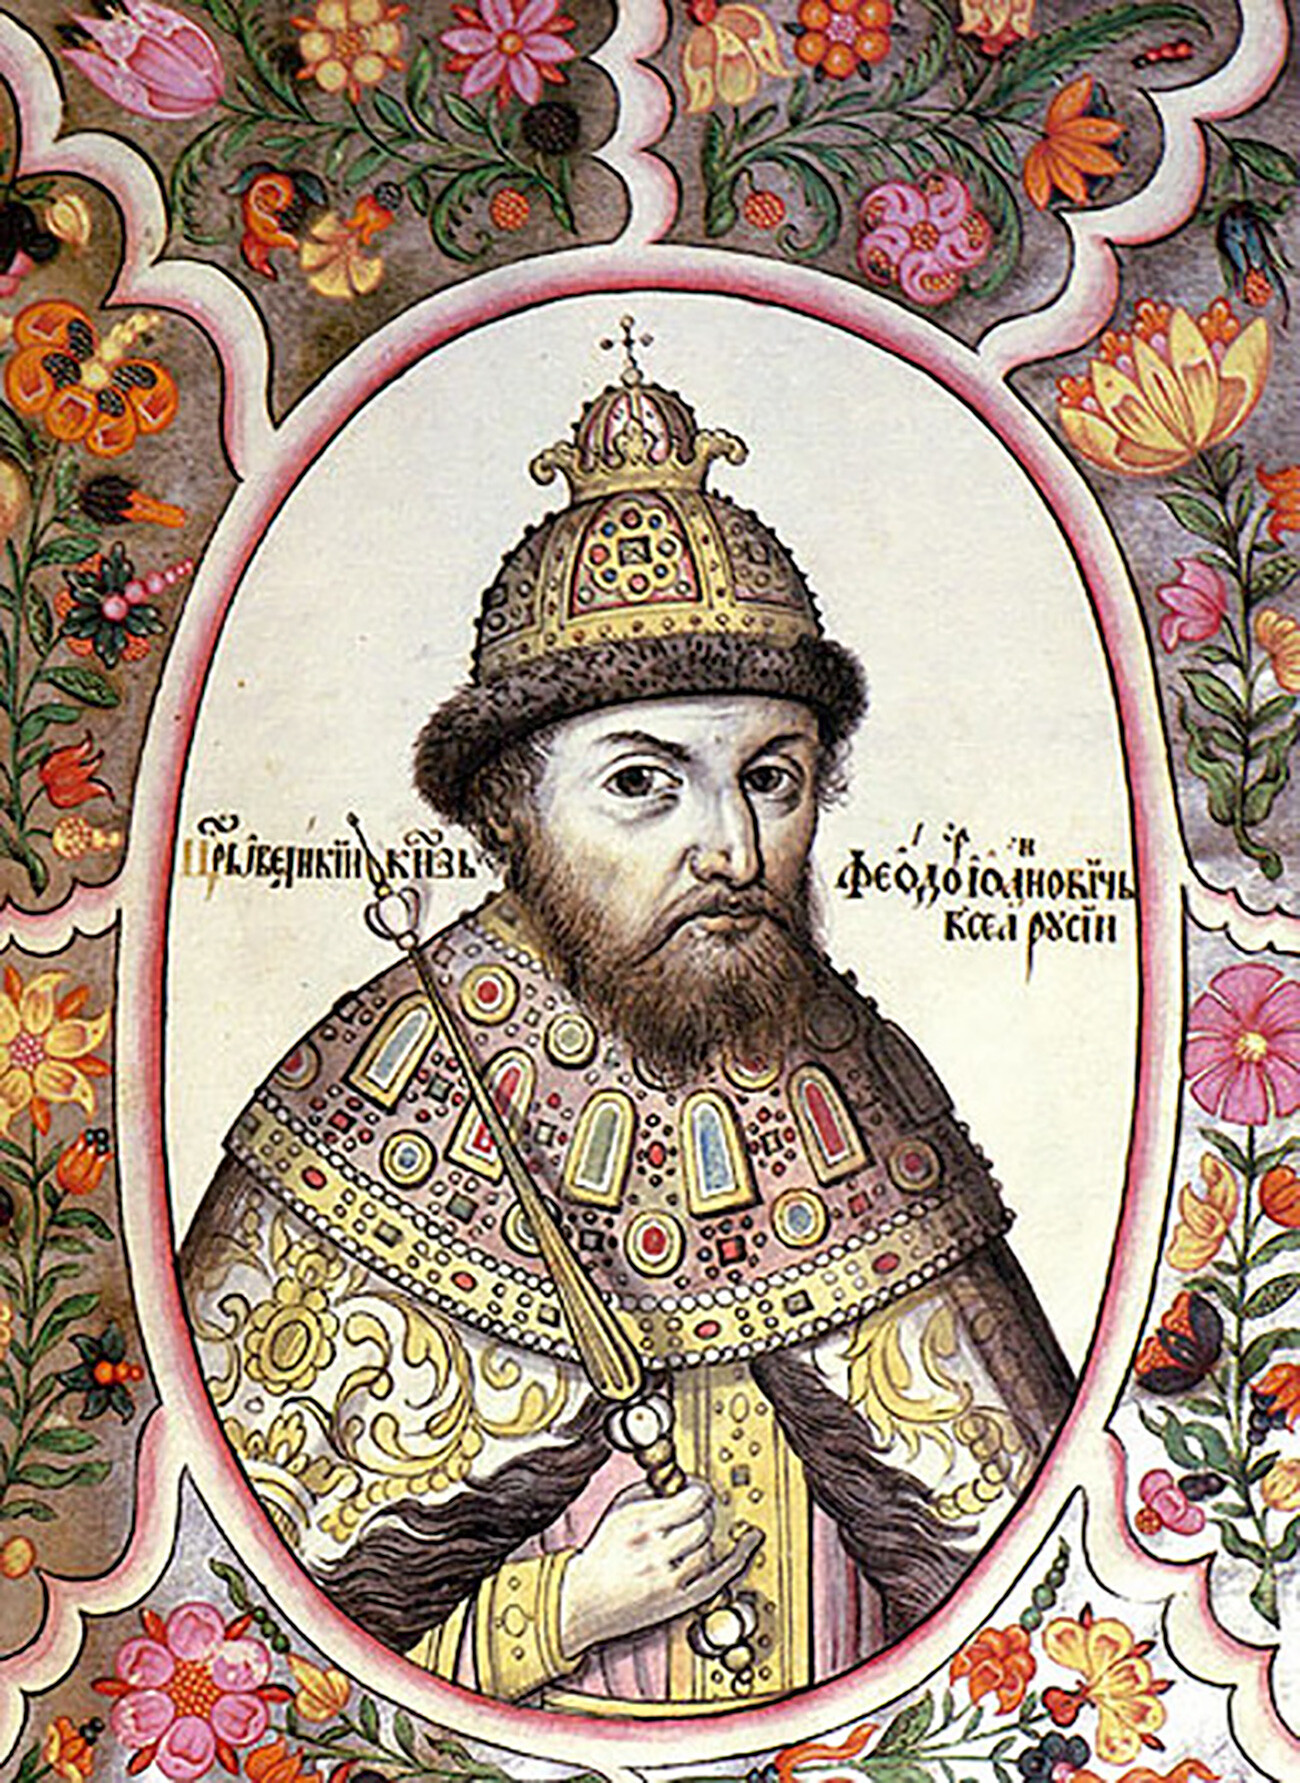 Lo zar Fëdor (Teodoro) I di Russia, figlio di Ivan il Terribile, fu l’ultimo zar della dinastia Rjurikide. Nacque affetto da gravi deformità fisiche e mentalmente disabile 